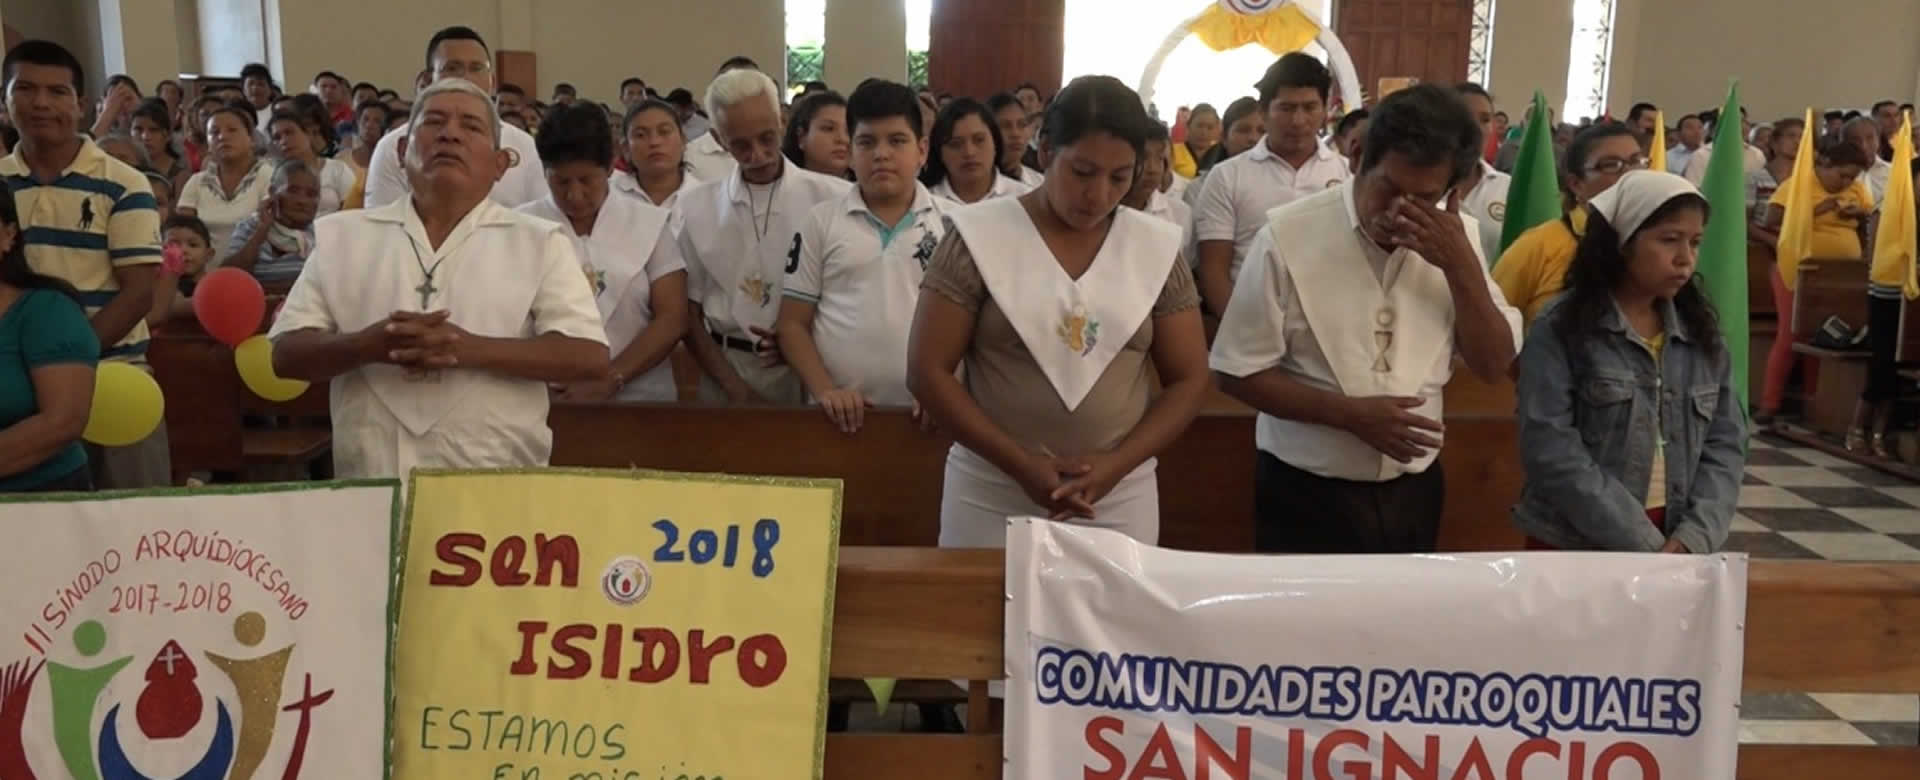 Comunidades Parroquiales de la Concepción celebran 9 años de fundación